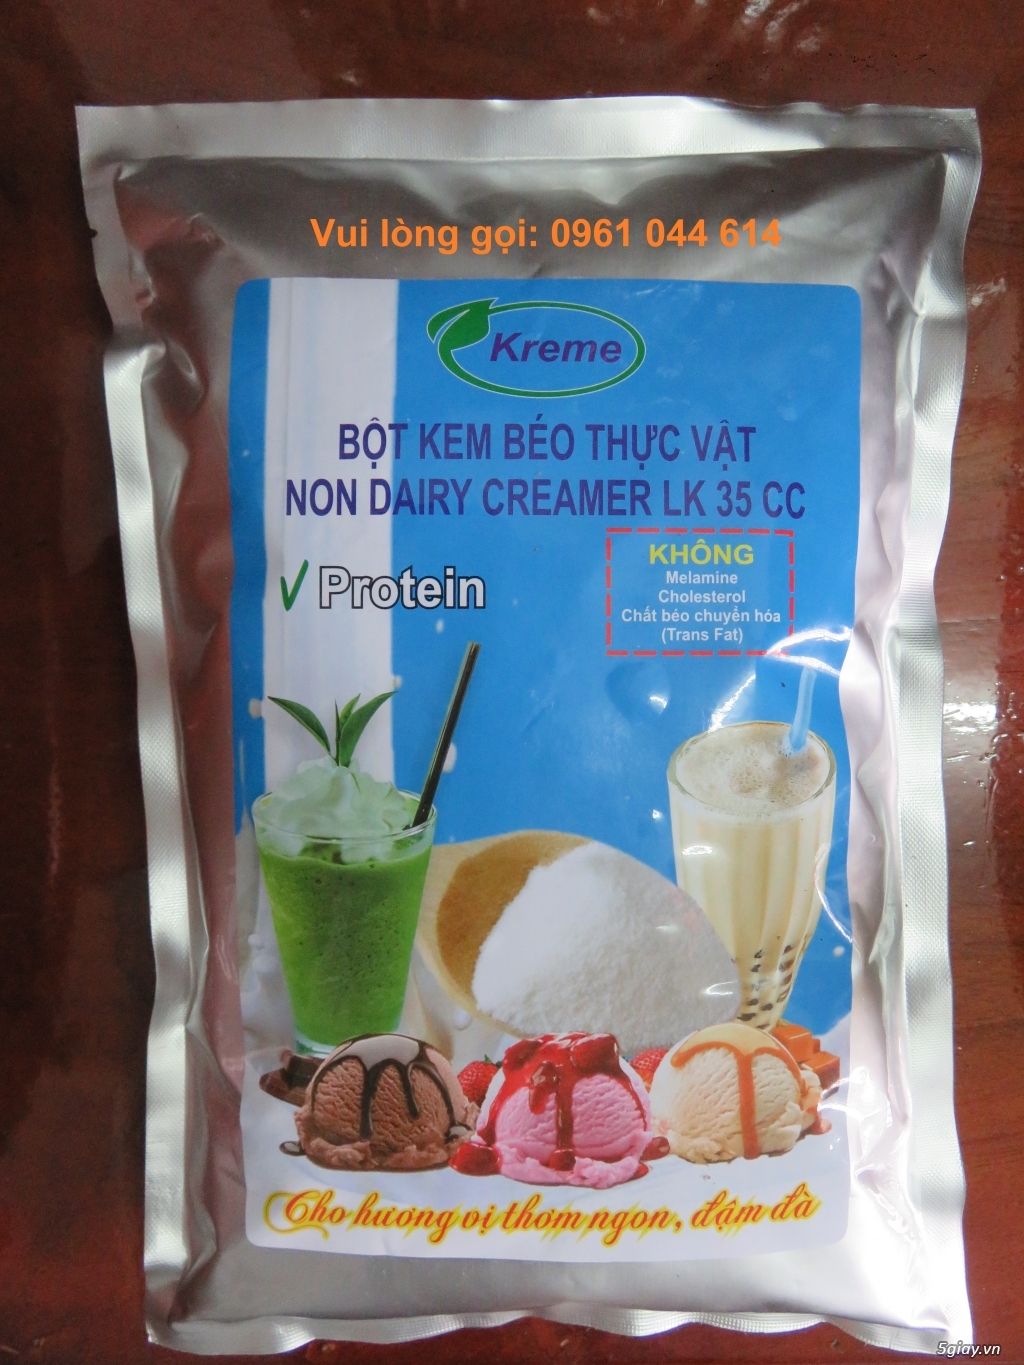 Bột kem béo thực vật (Non Dairy Creamer) KREME - LK 35 CC từ Indonesia